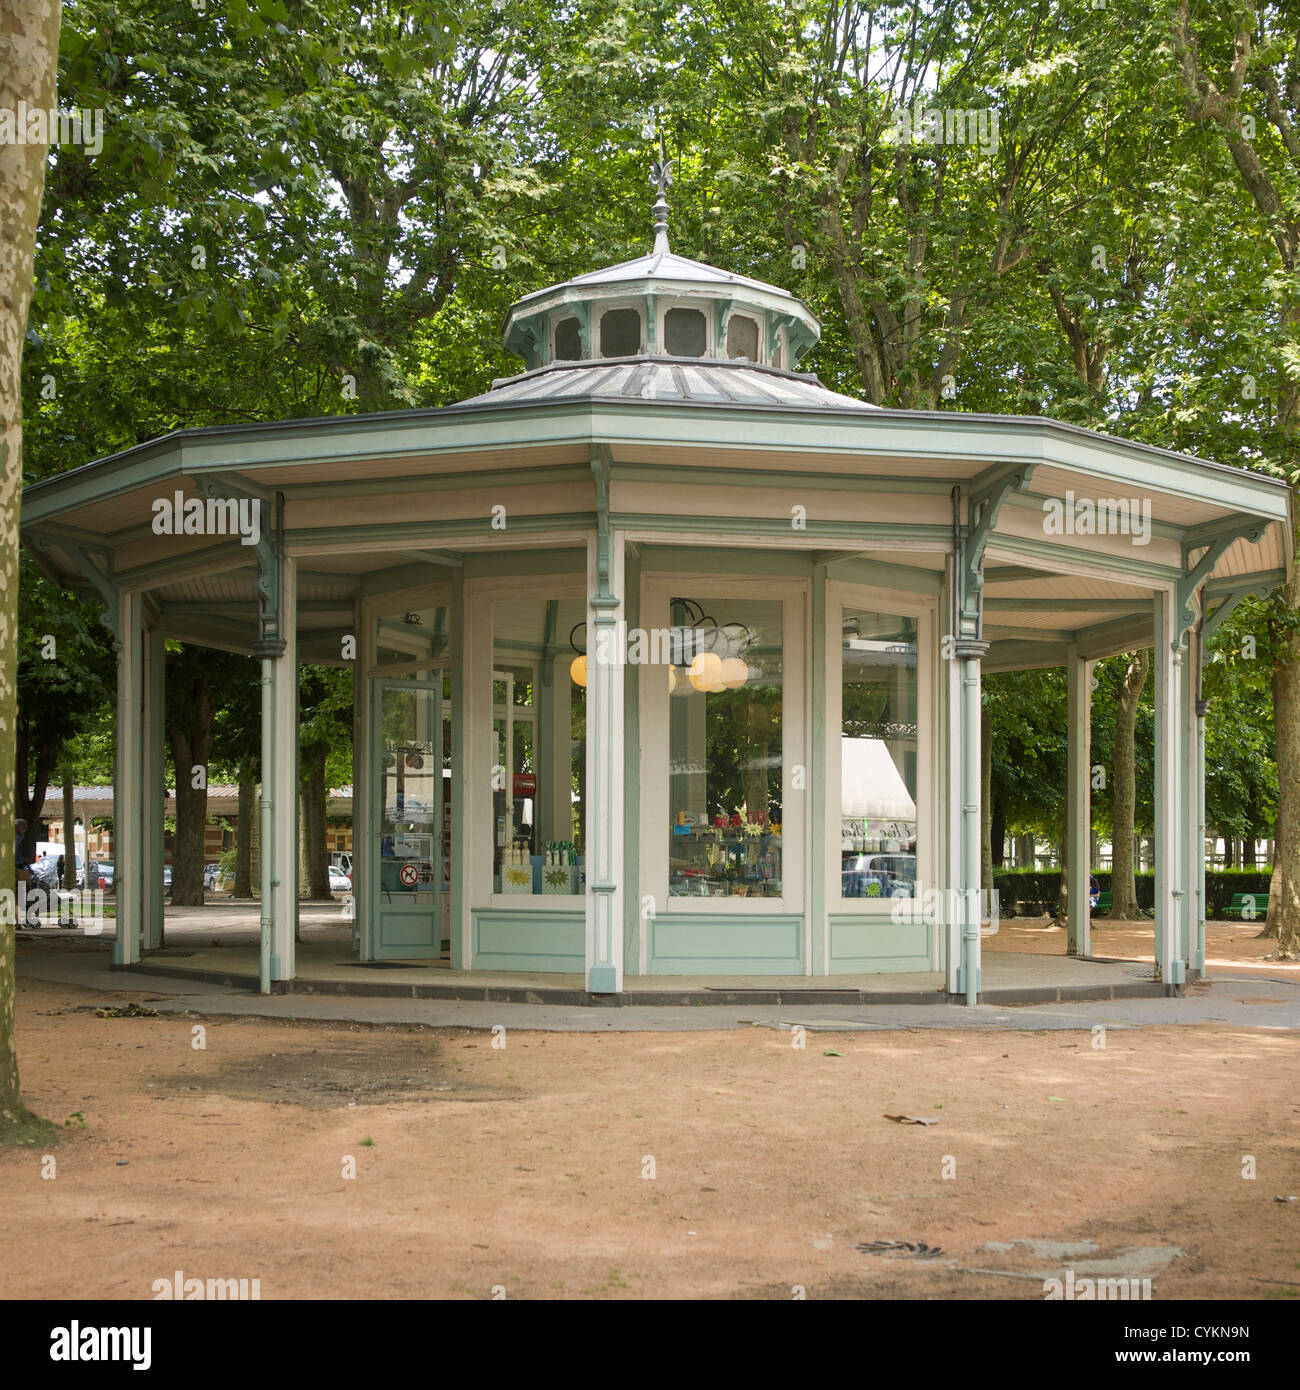 Pavilion in  Parc des Sources / Source park, Vichy, Allier, France, Europe Stock Photo